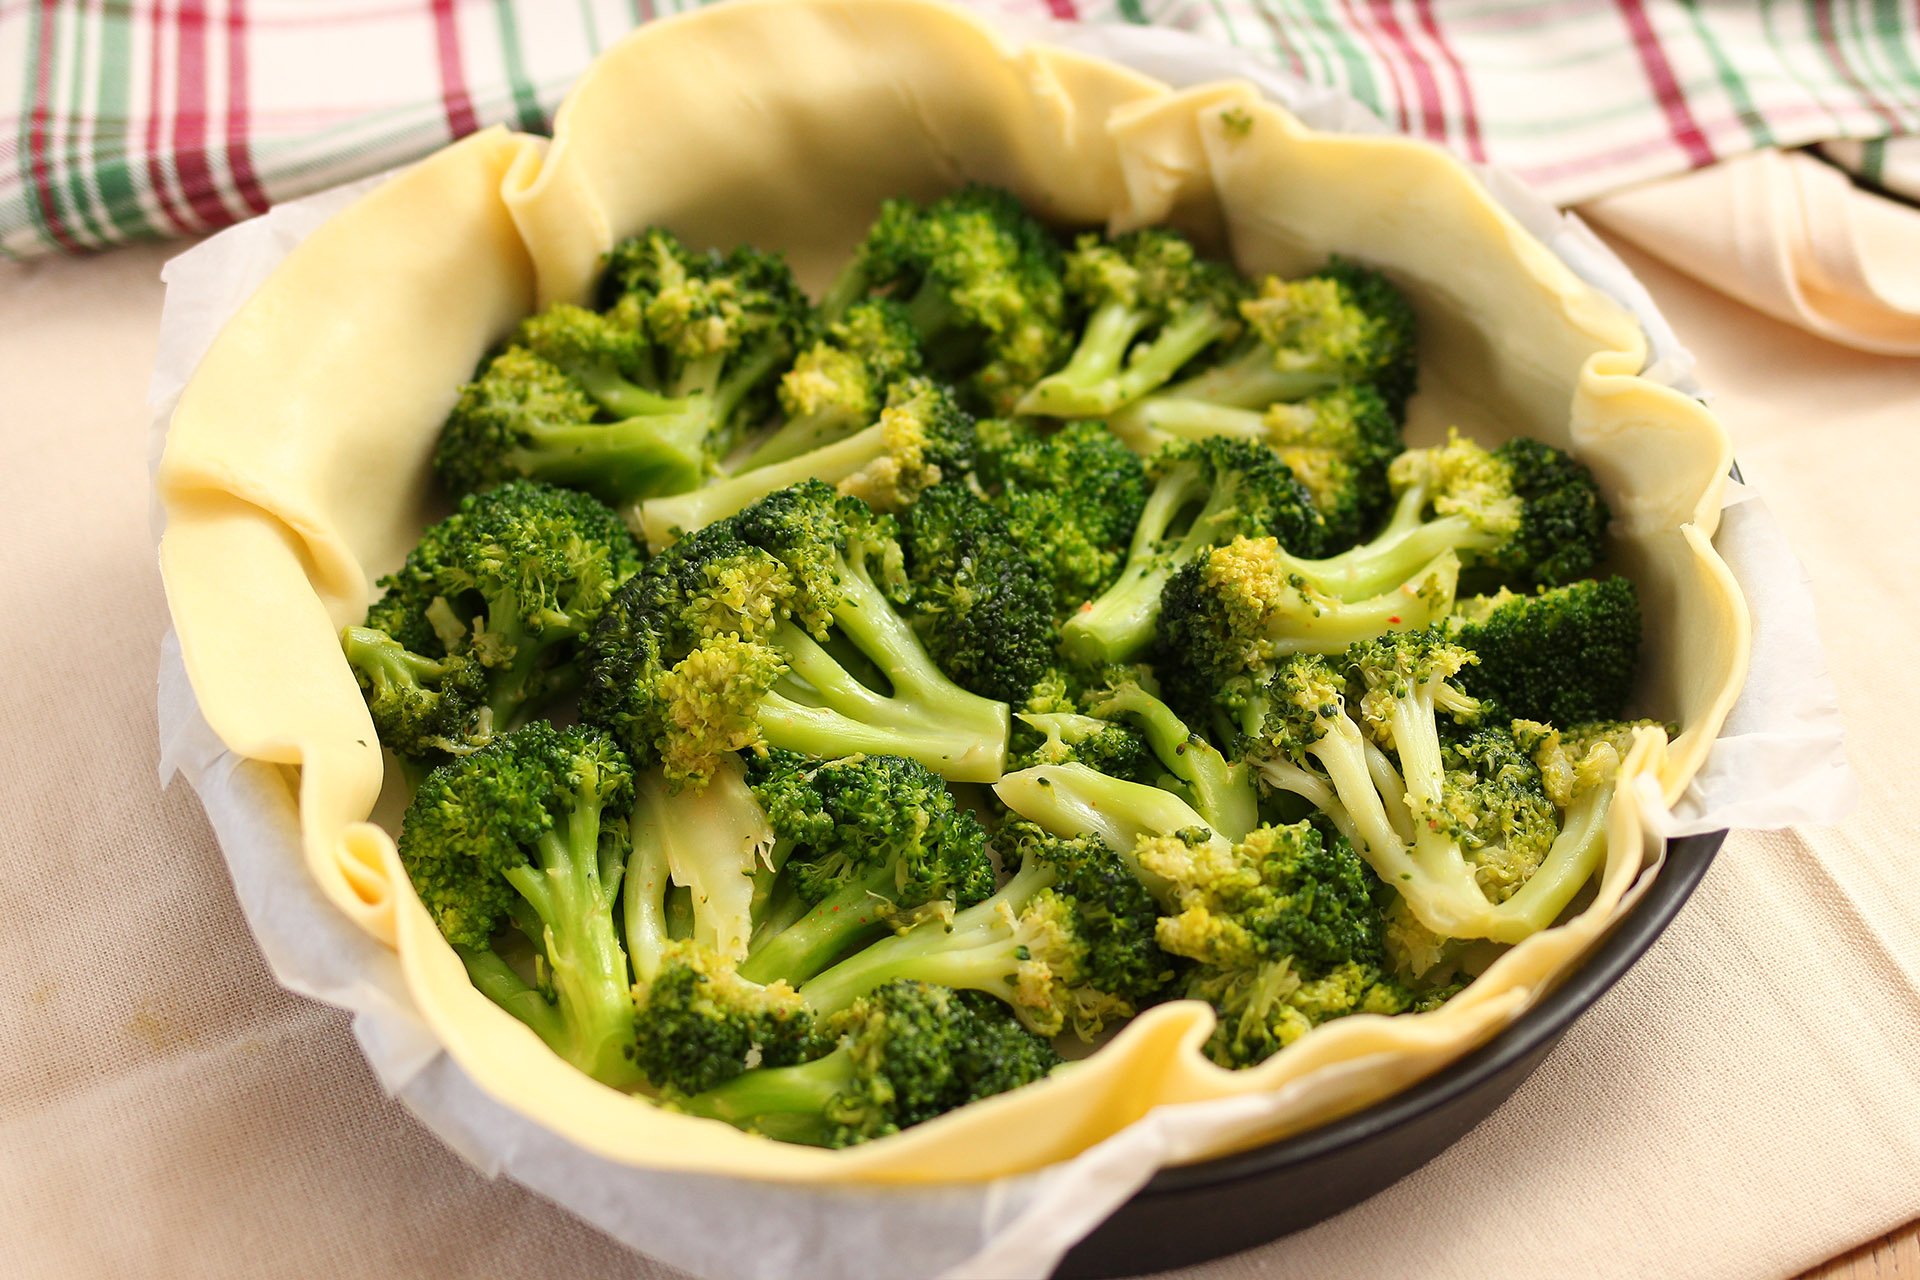 Torta rustica broccoletti e mozzarella - Step 1